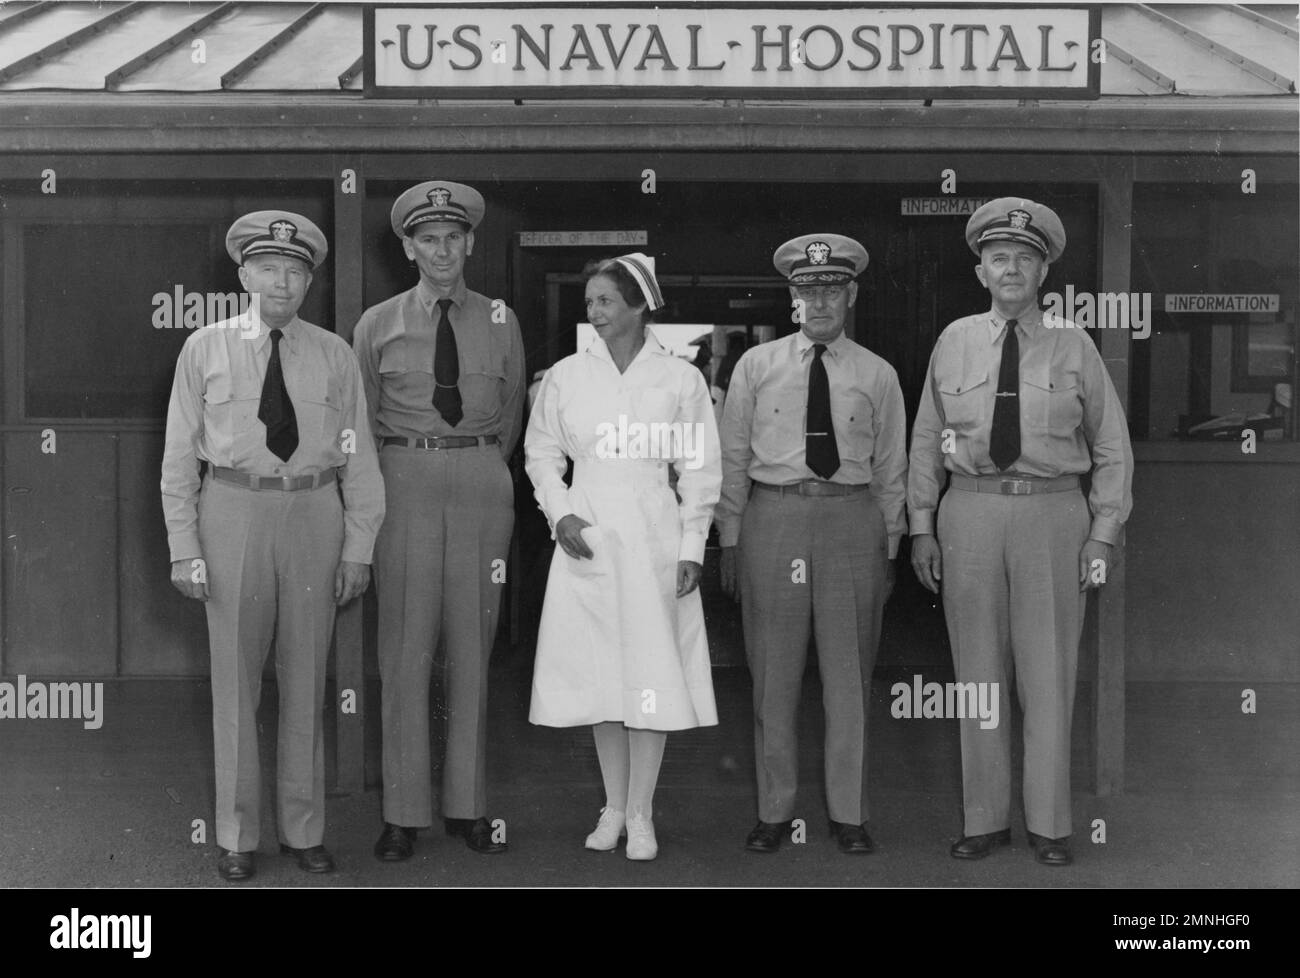 Base 8, Stati Uniti Naval Hospital, Pearl Harbor, territorio delle Hawaii. Vice ammiraglio Ross T. McIntire, Capitano L.O. Pietra, tenente comandante Susan J. inglese, capitano W.A. Wylie, ammiraglio posteriore C.B. Camerer, Pearl Harbor, Hawaii / territorio delle Hawaii ca. 1940s o 1950s Foto Stock